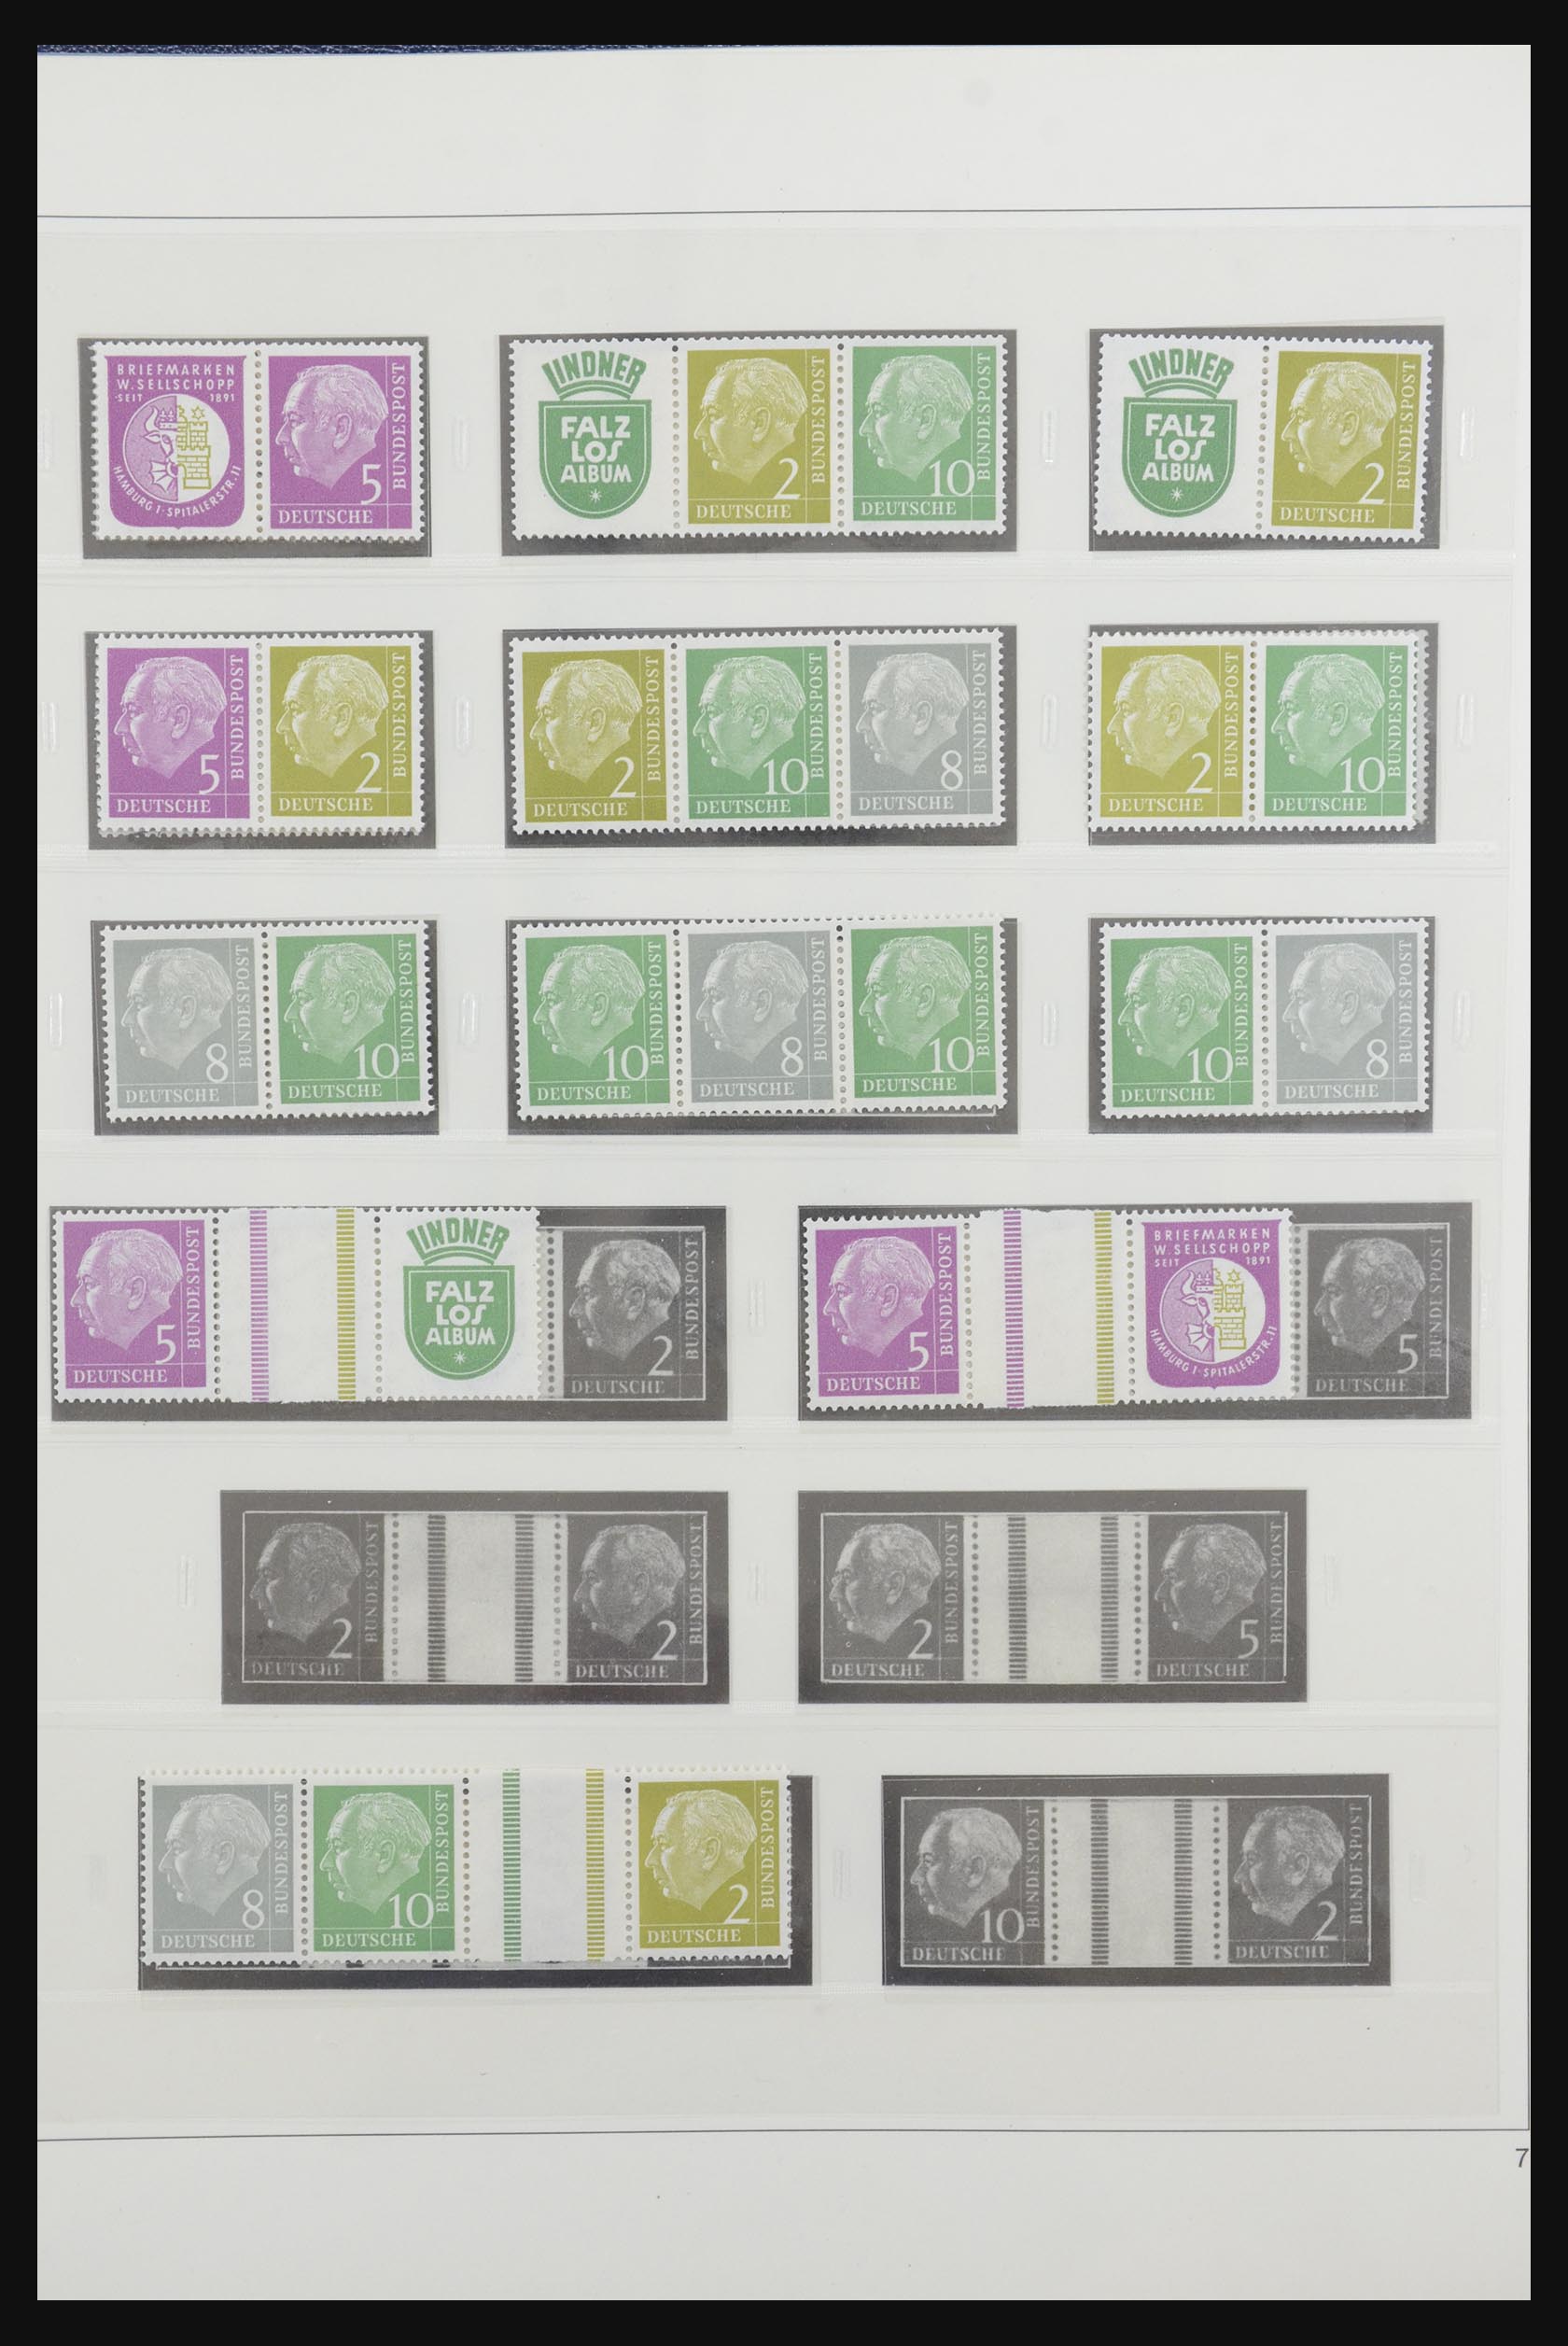 31842 008 - 31842 Bundespost combinaties 1951-2003.